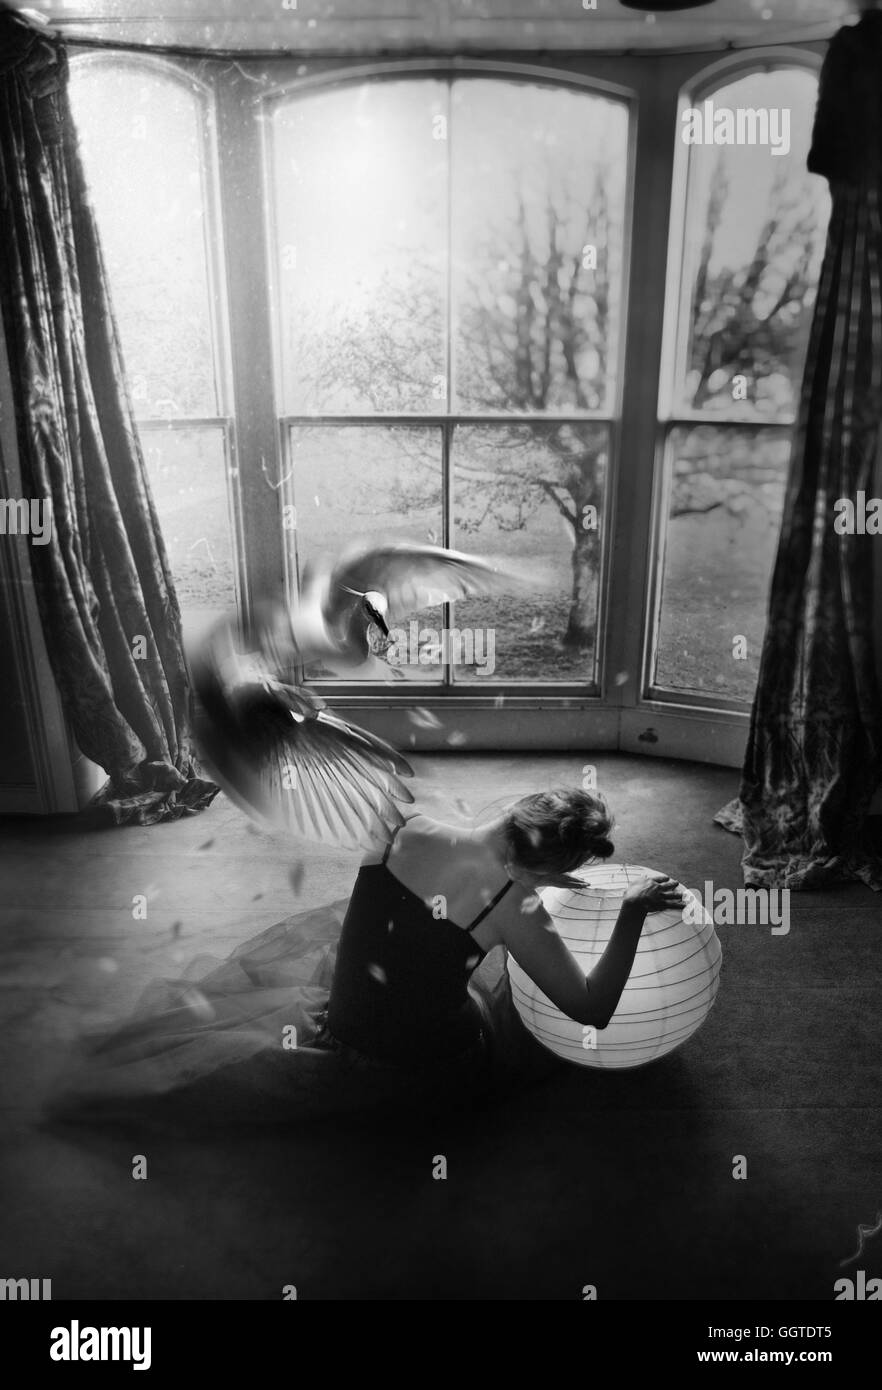 Vista posterior de la joven sentada en el suelo sujetando una bola con un gran pájaro blanco volando Foto de stock